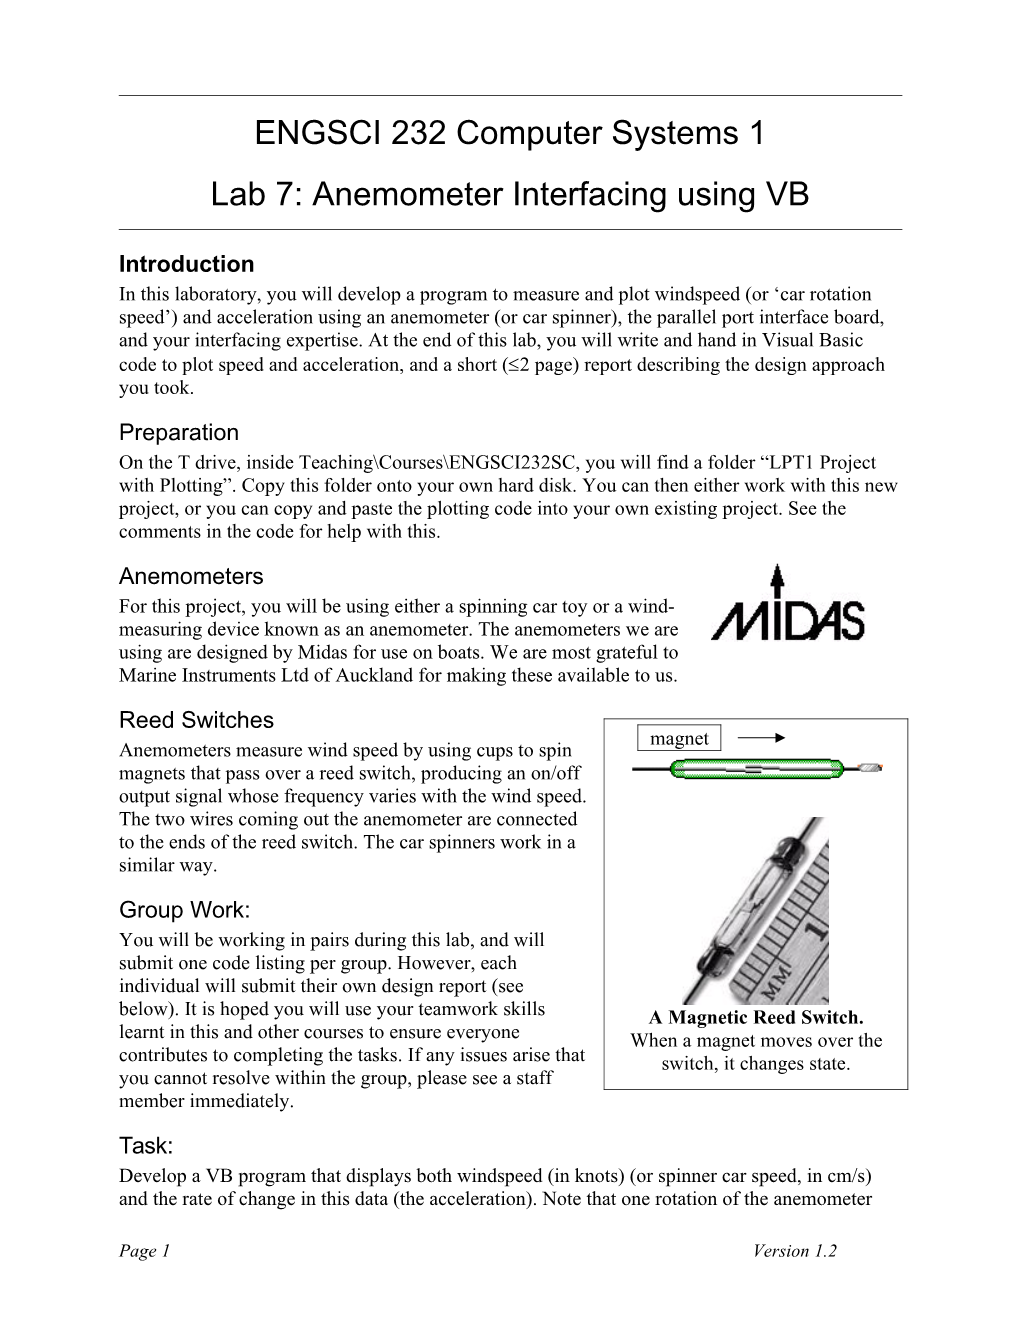 Lab 7: Anemometer Interfacing Using VB